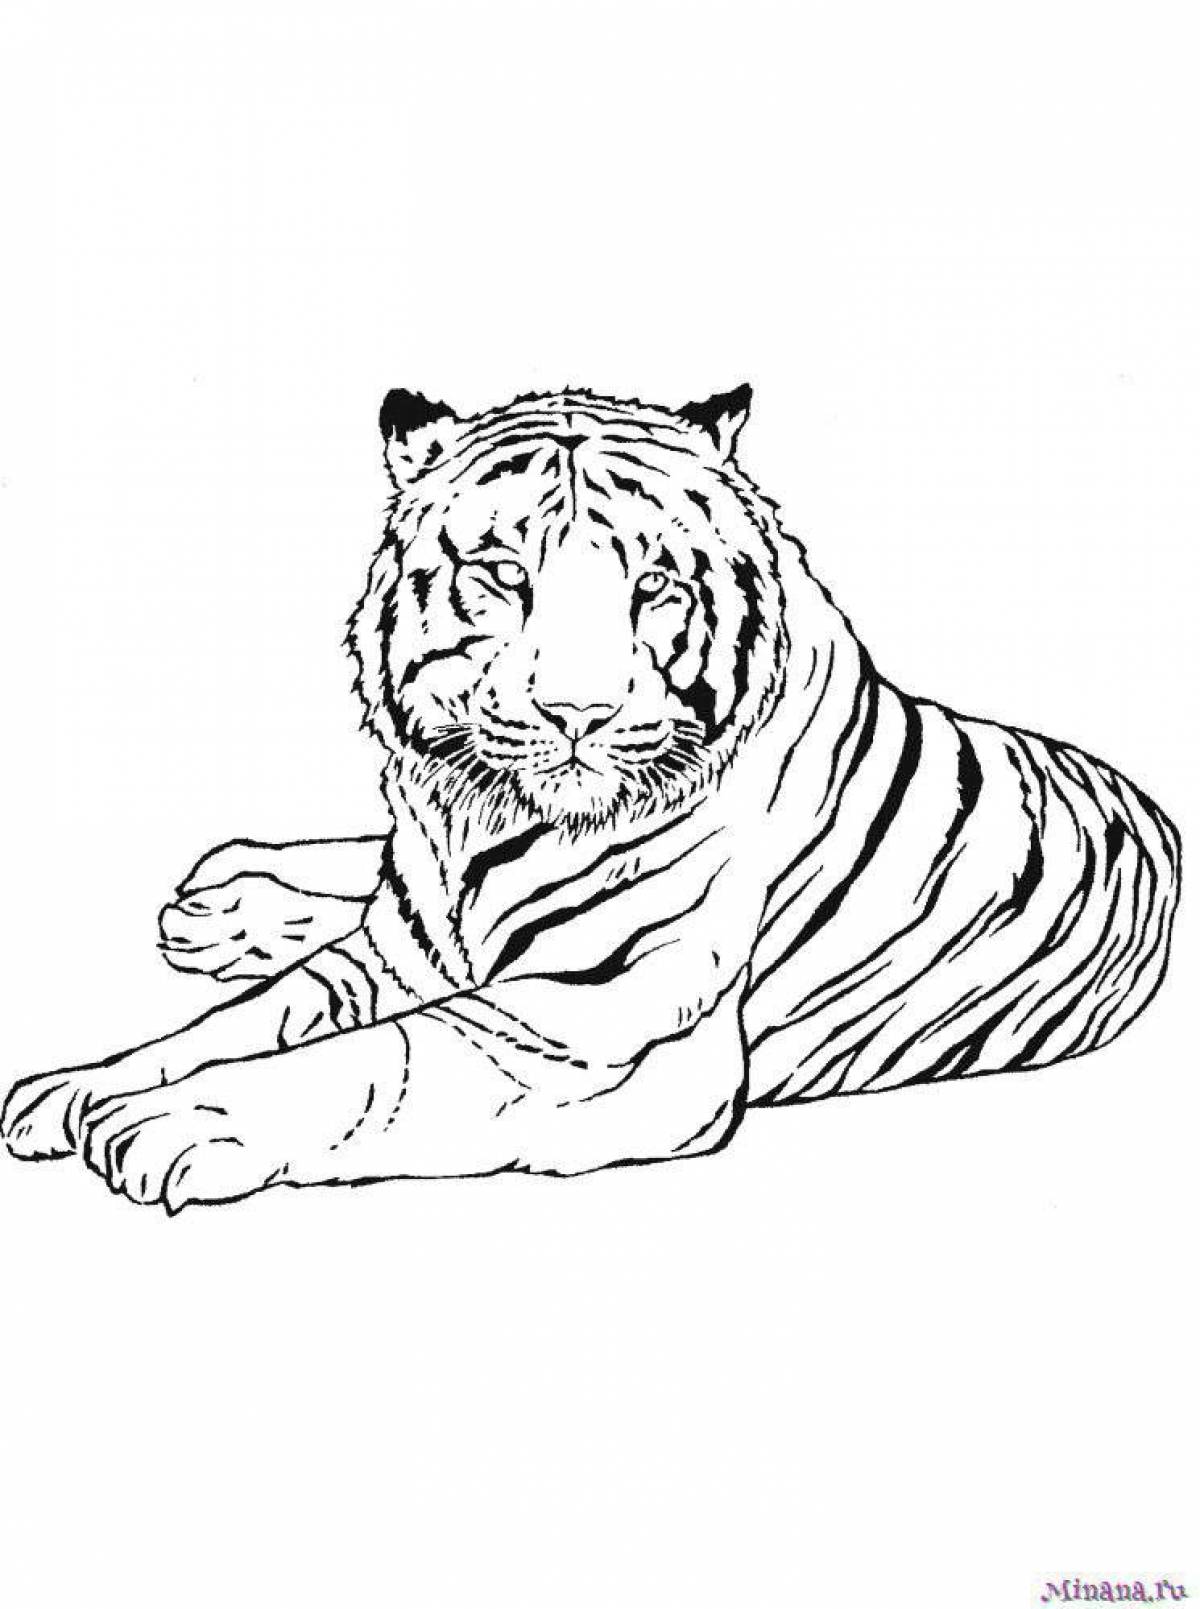 Amur tiger coloring page